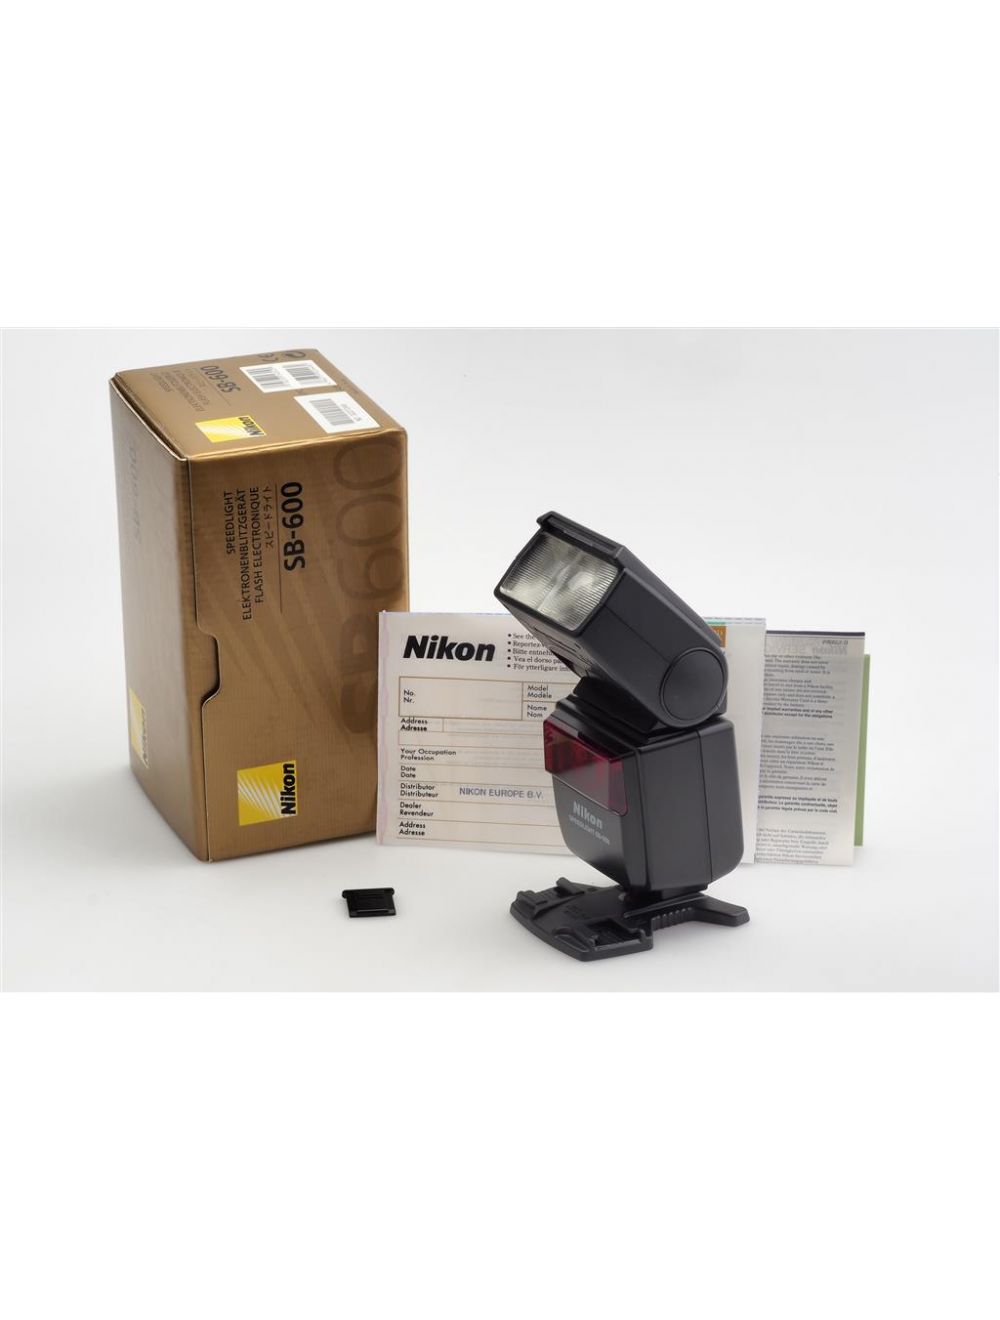 Nikon Speedlight SB-600 Flash Blitz w. Box #3227249 | JO GEIER